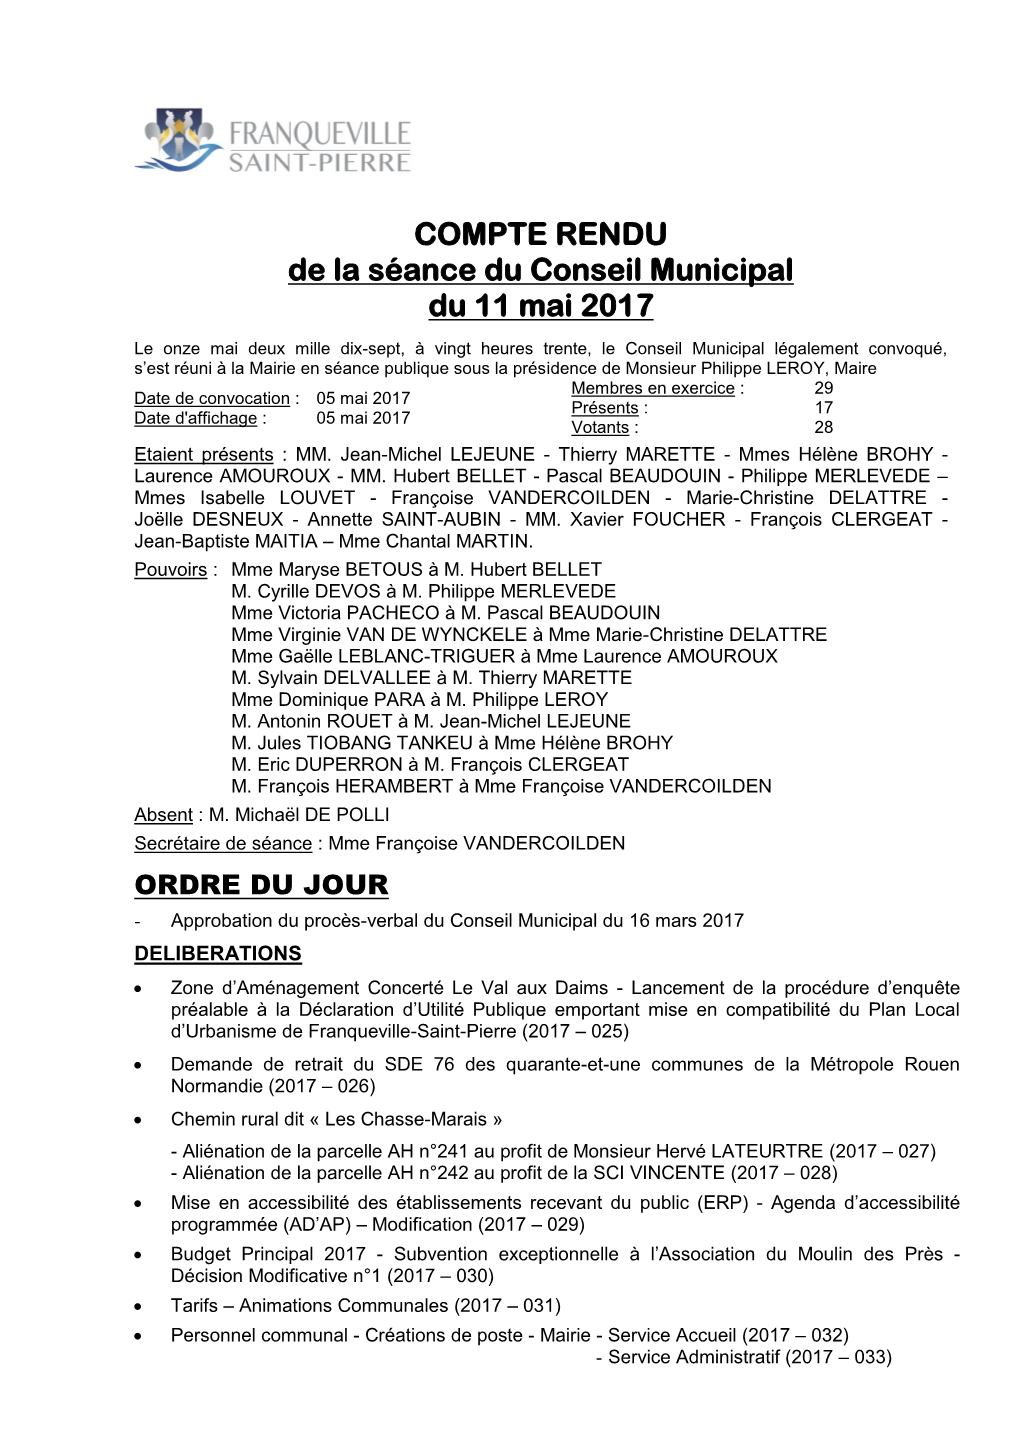 COMPTE RENDU De La Séance Du Conseil Municipal Du 11 Mai 2017